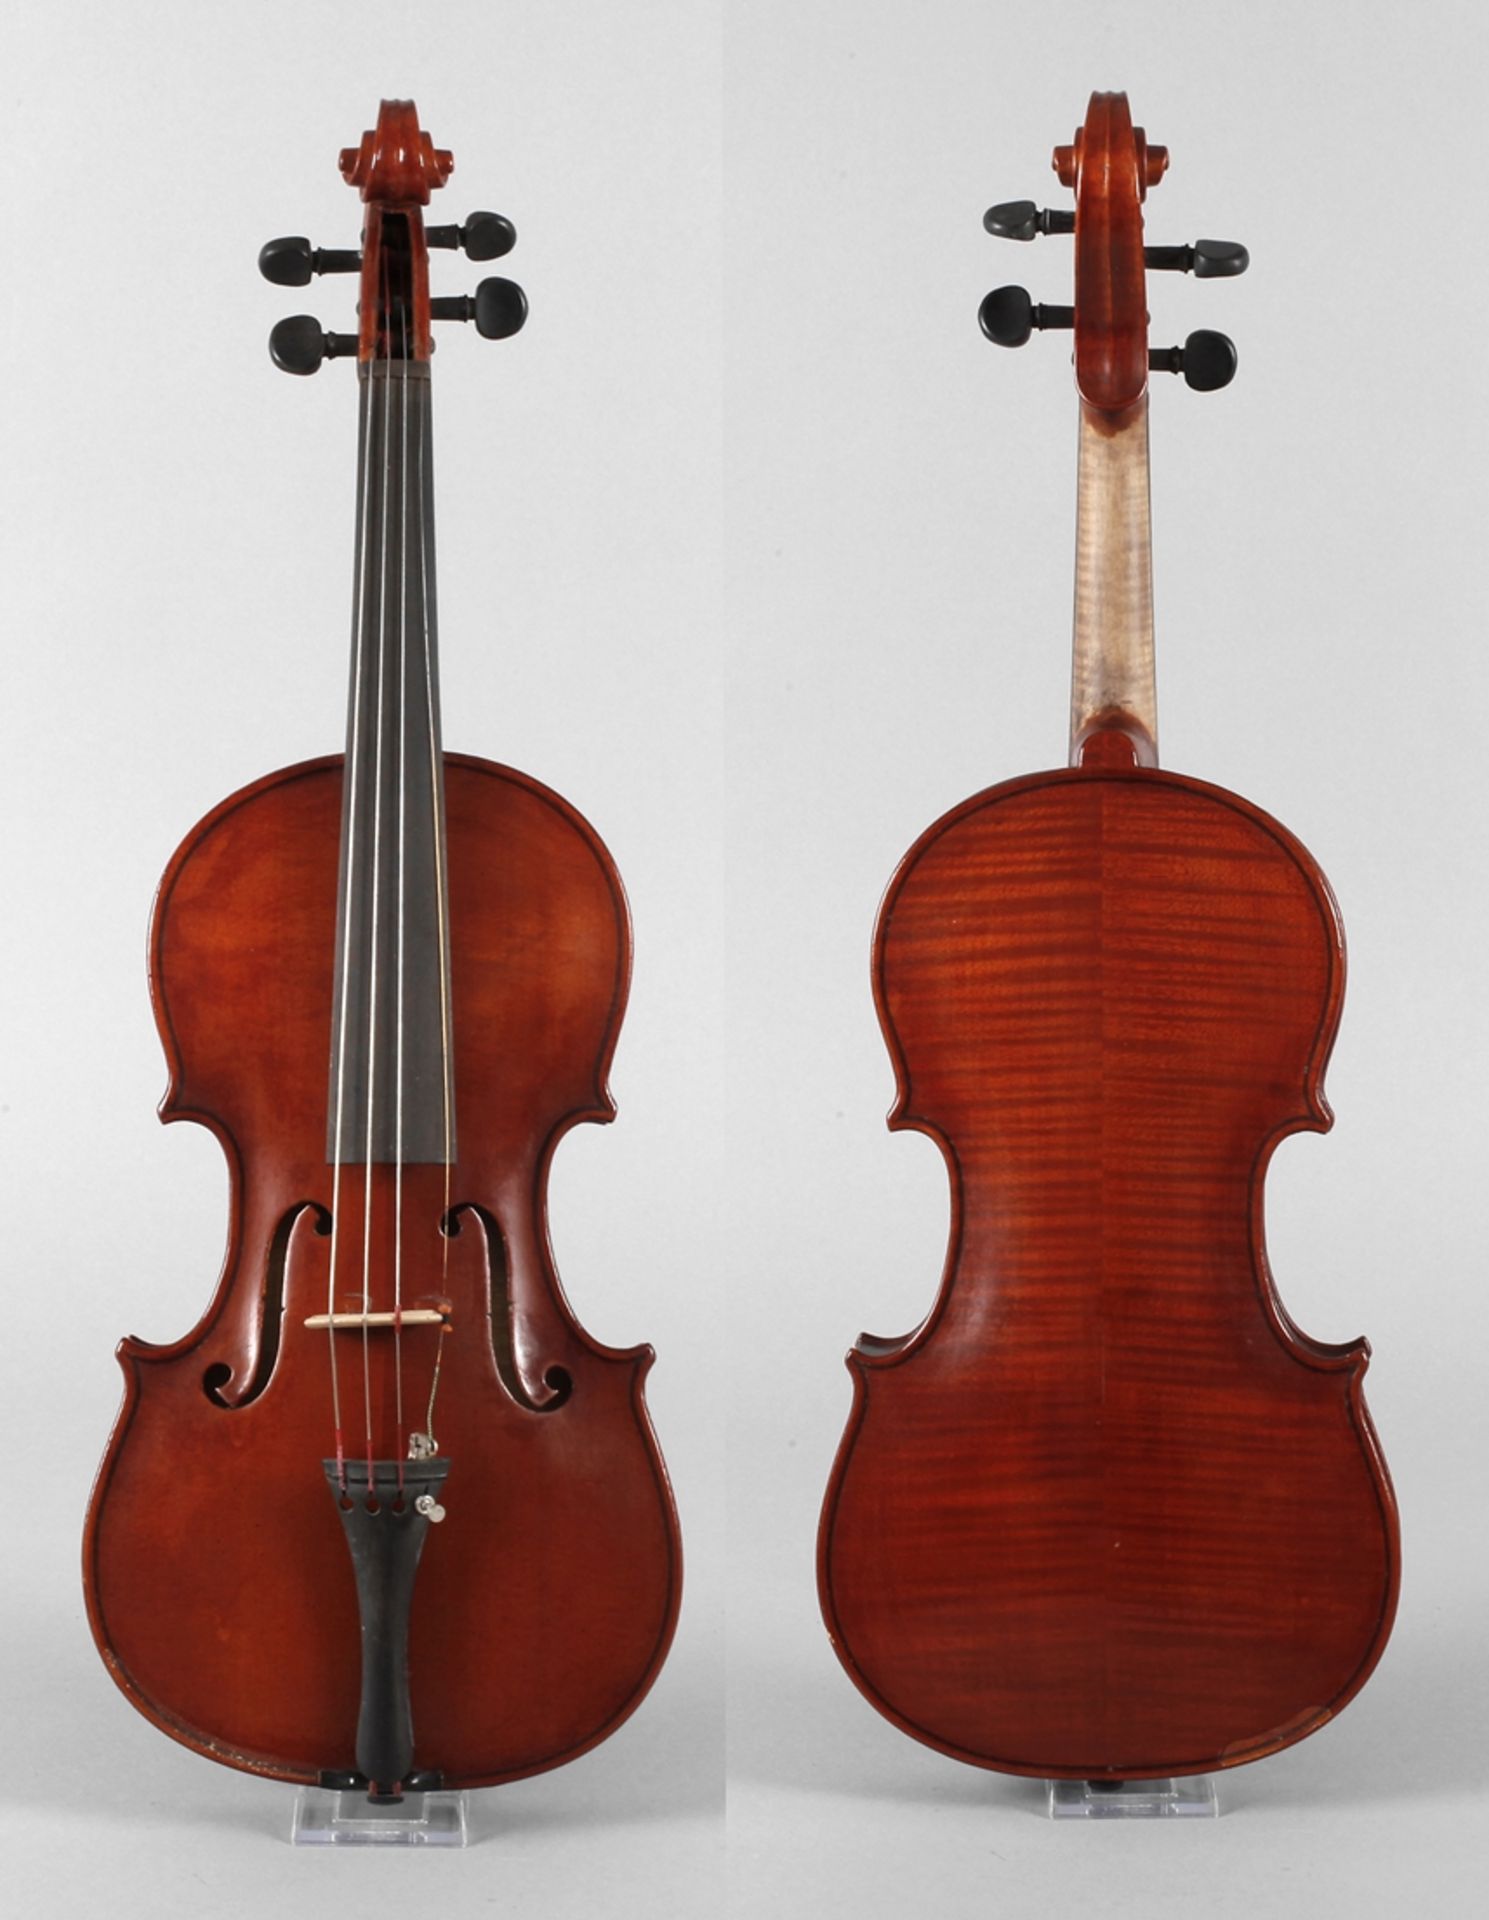 Violine Luigi Amici innen auf Klebezettel signiert Luigi Amici Roma 1925, geteilter, sehr